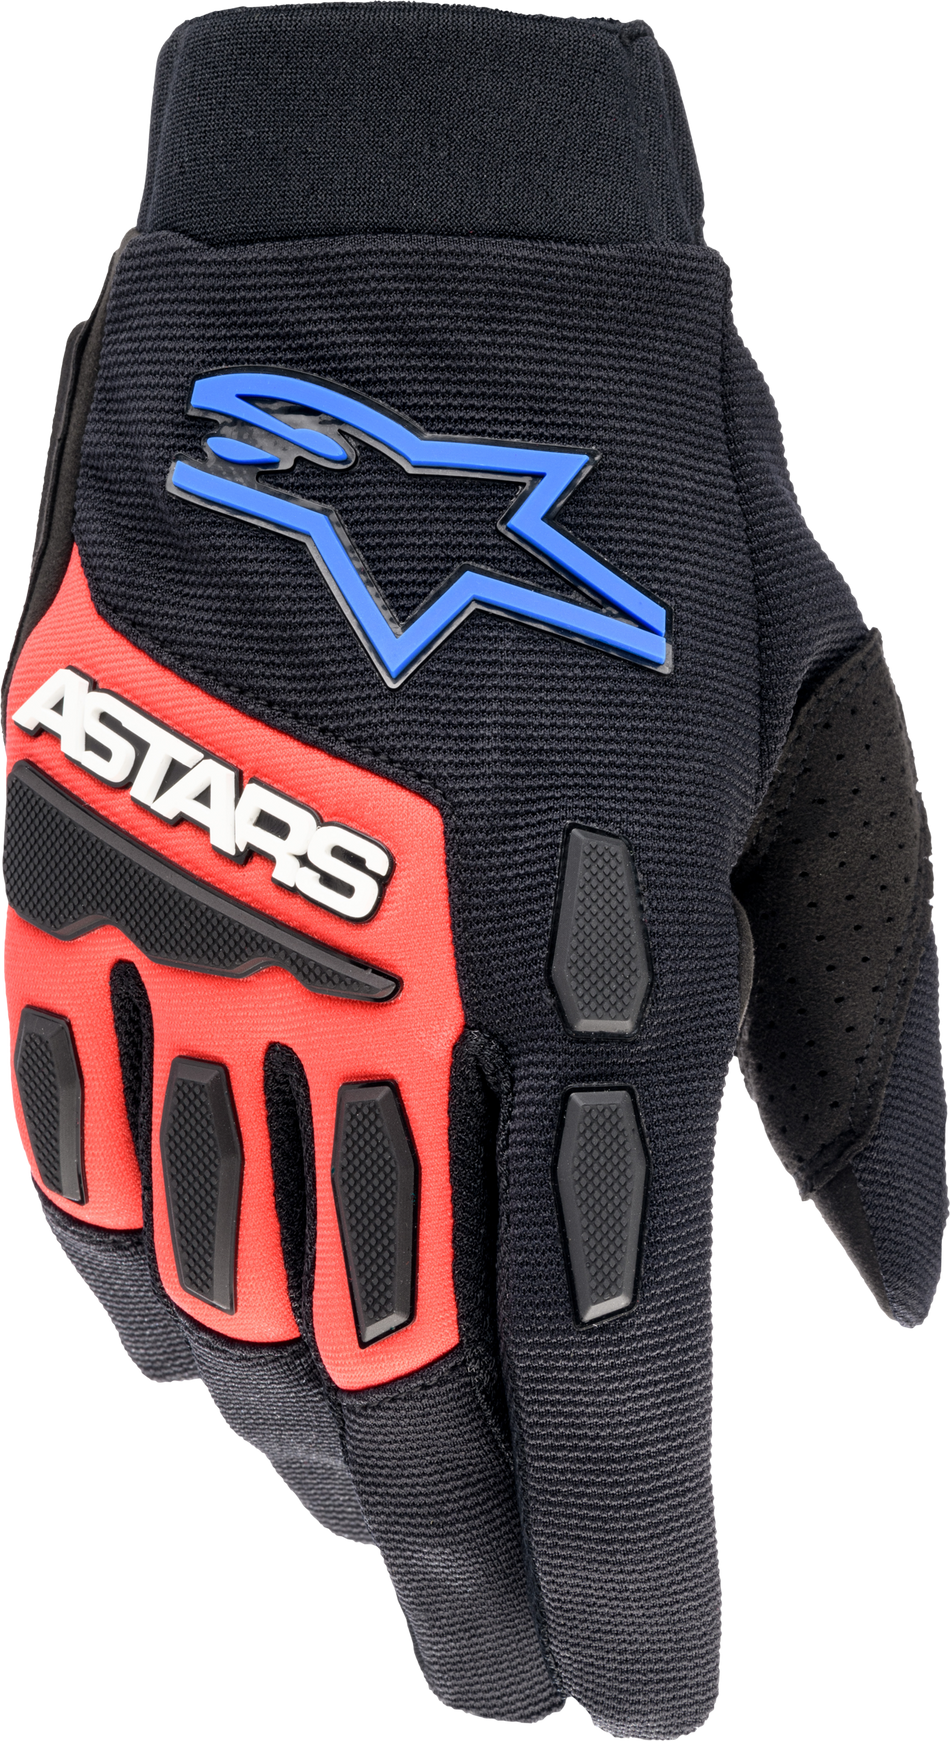 ALPINESTARS Full Bore Xt Gloves Black/Bright Blue/Red Sm 3563623-1317-SM